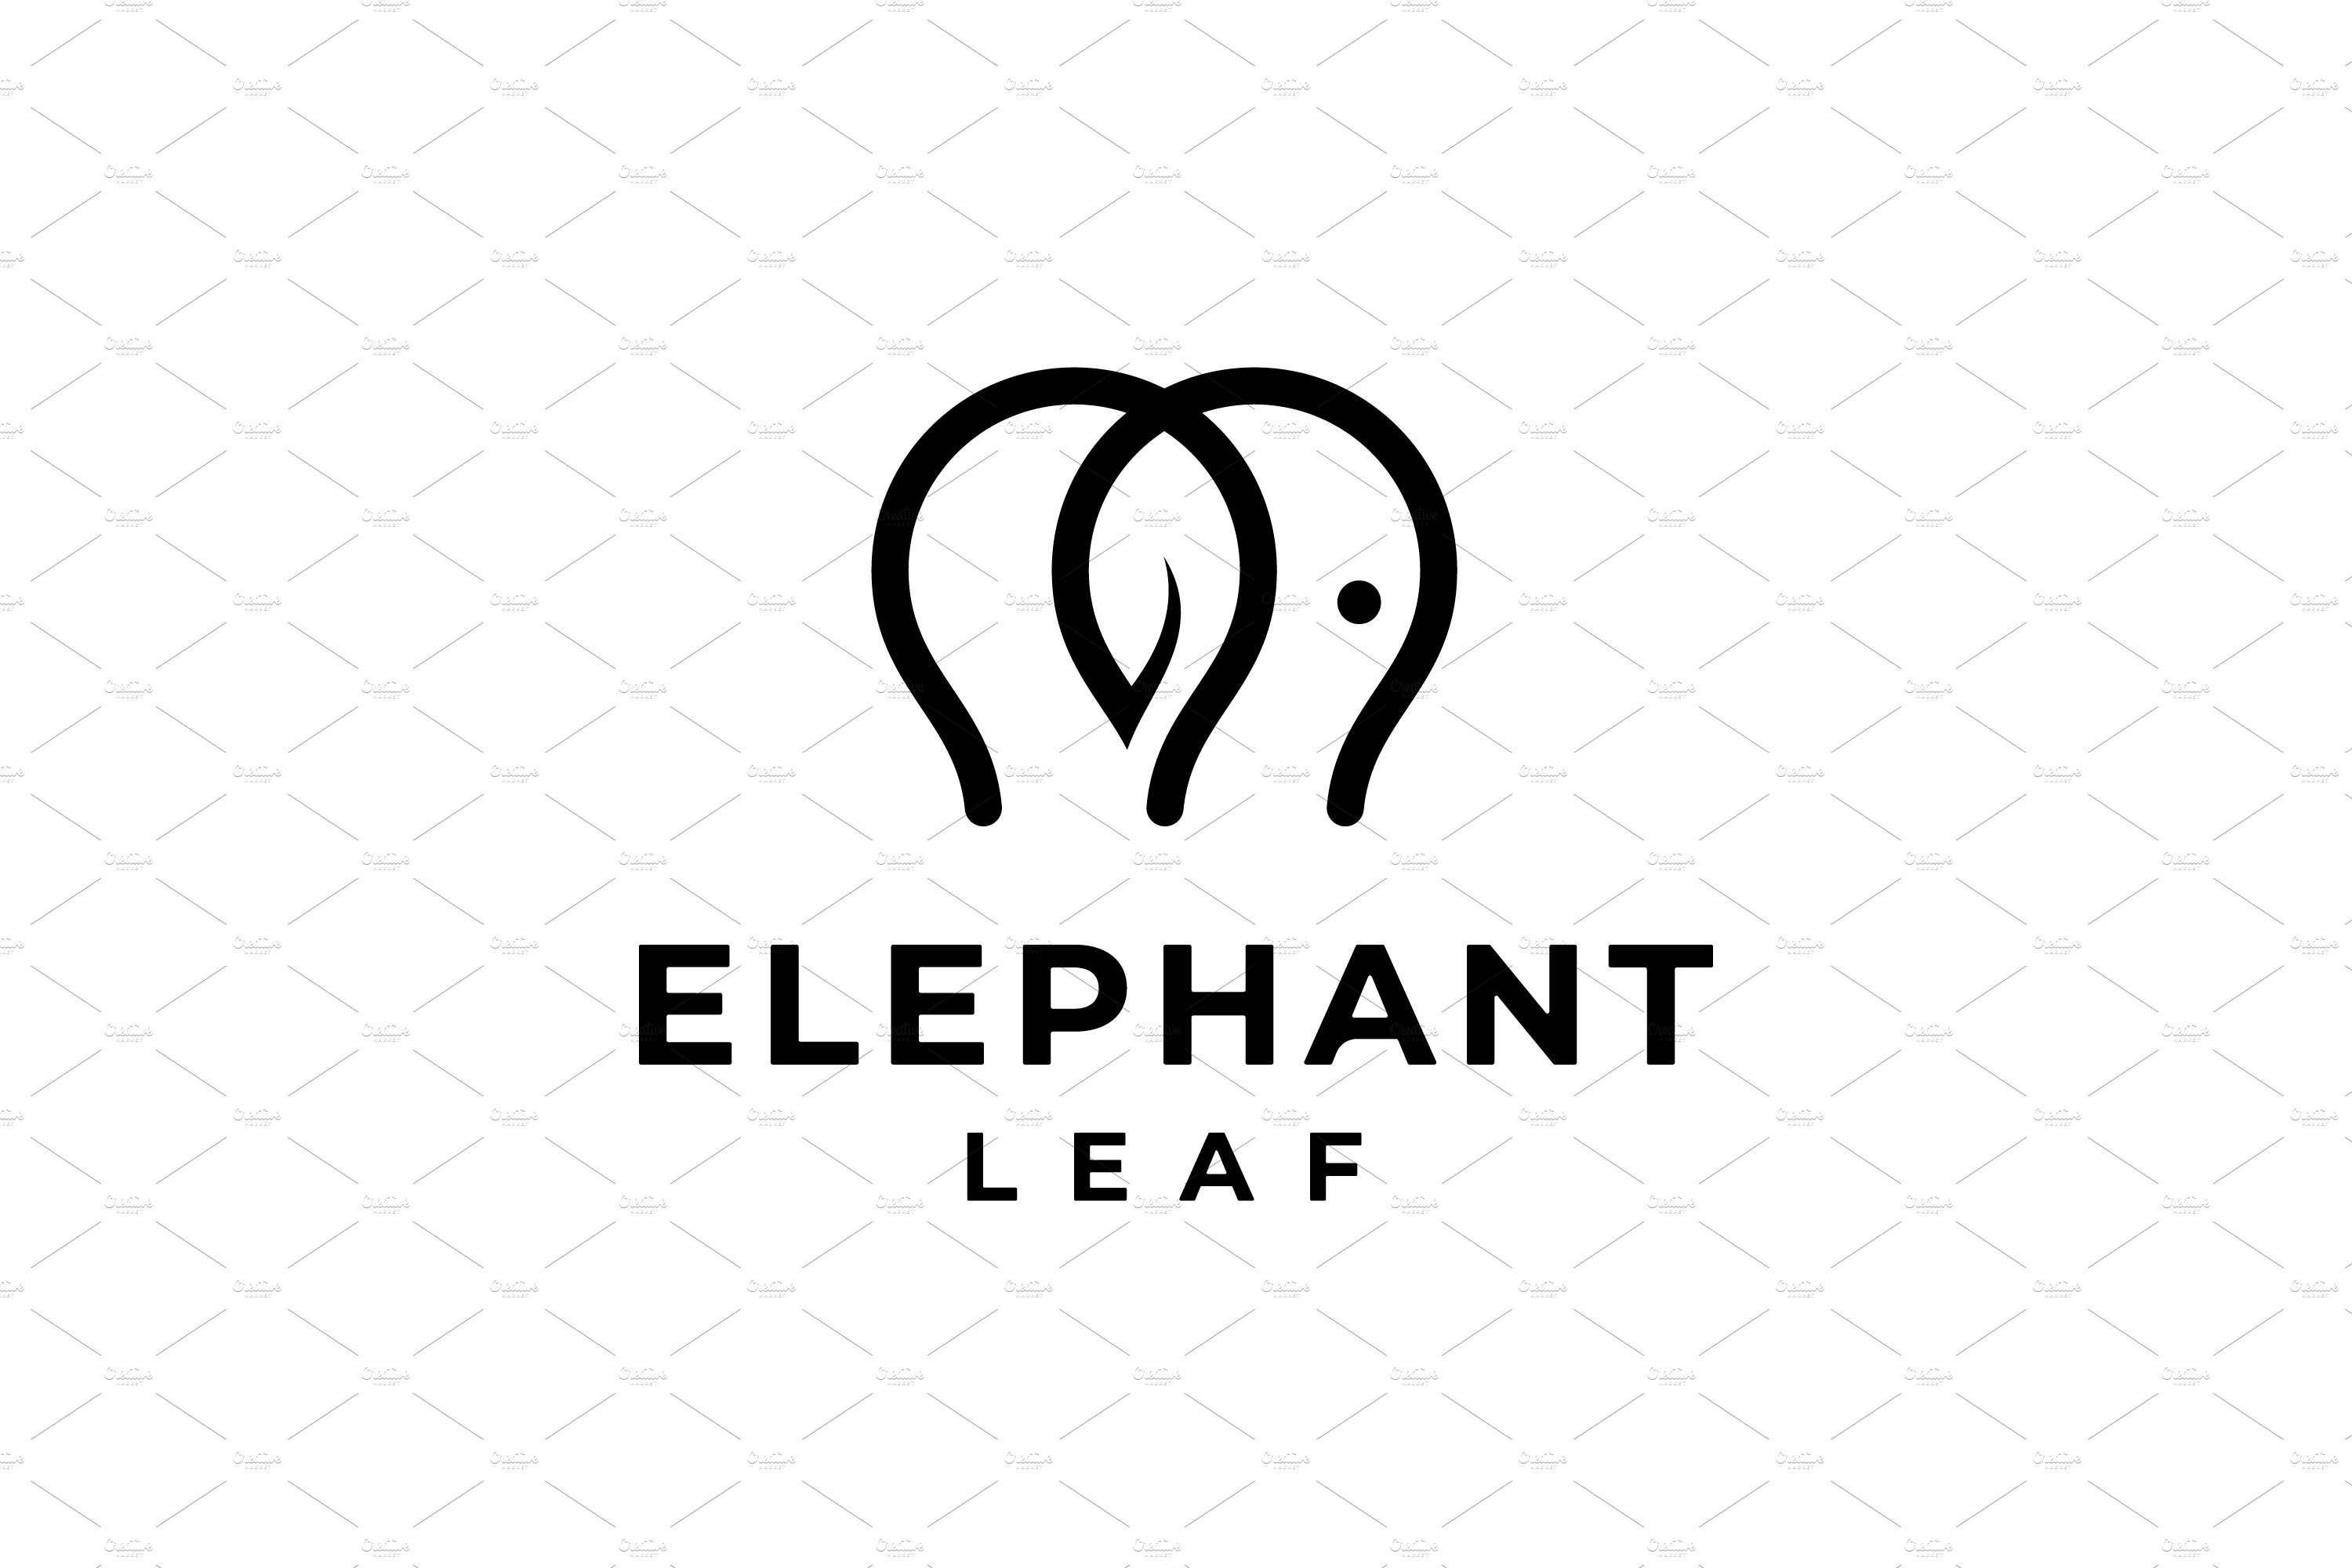 Elephant Leaf Logo cover image.